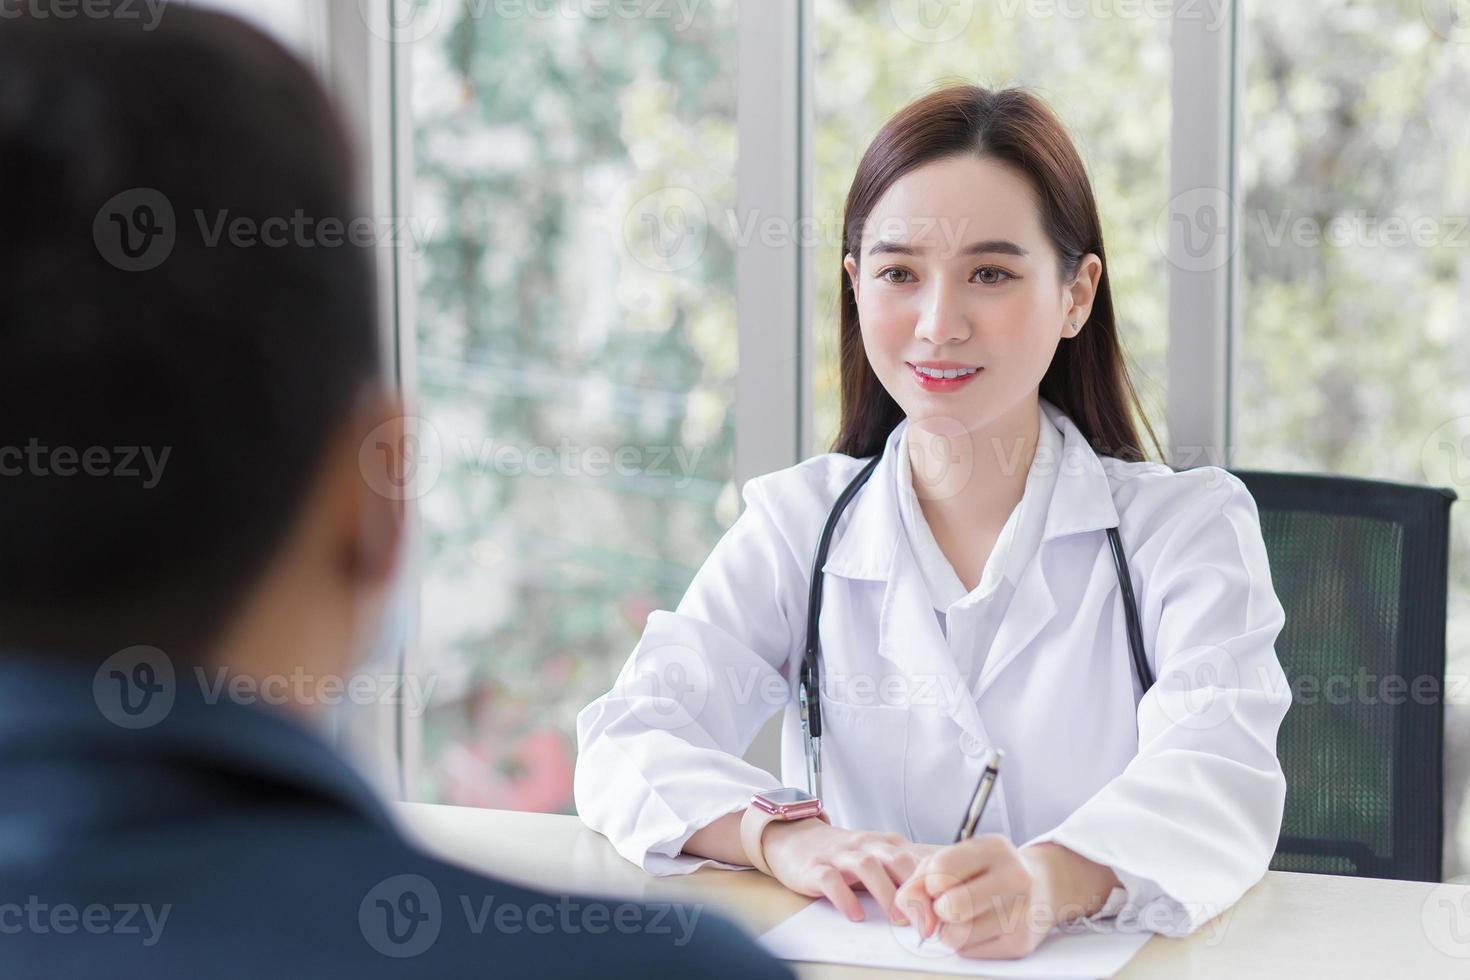 una doctora profesional asiática que usa abrigo médico habla con un paciente para consultarle y sugerirle información sobre atención médica. foto